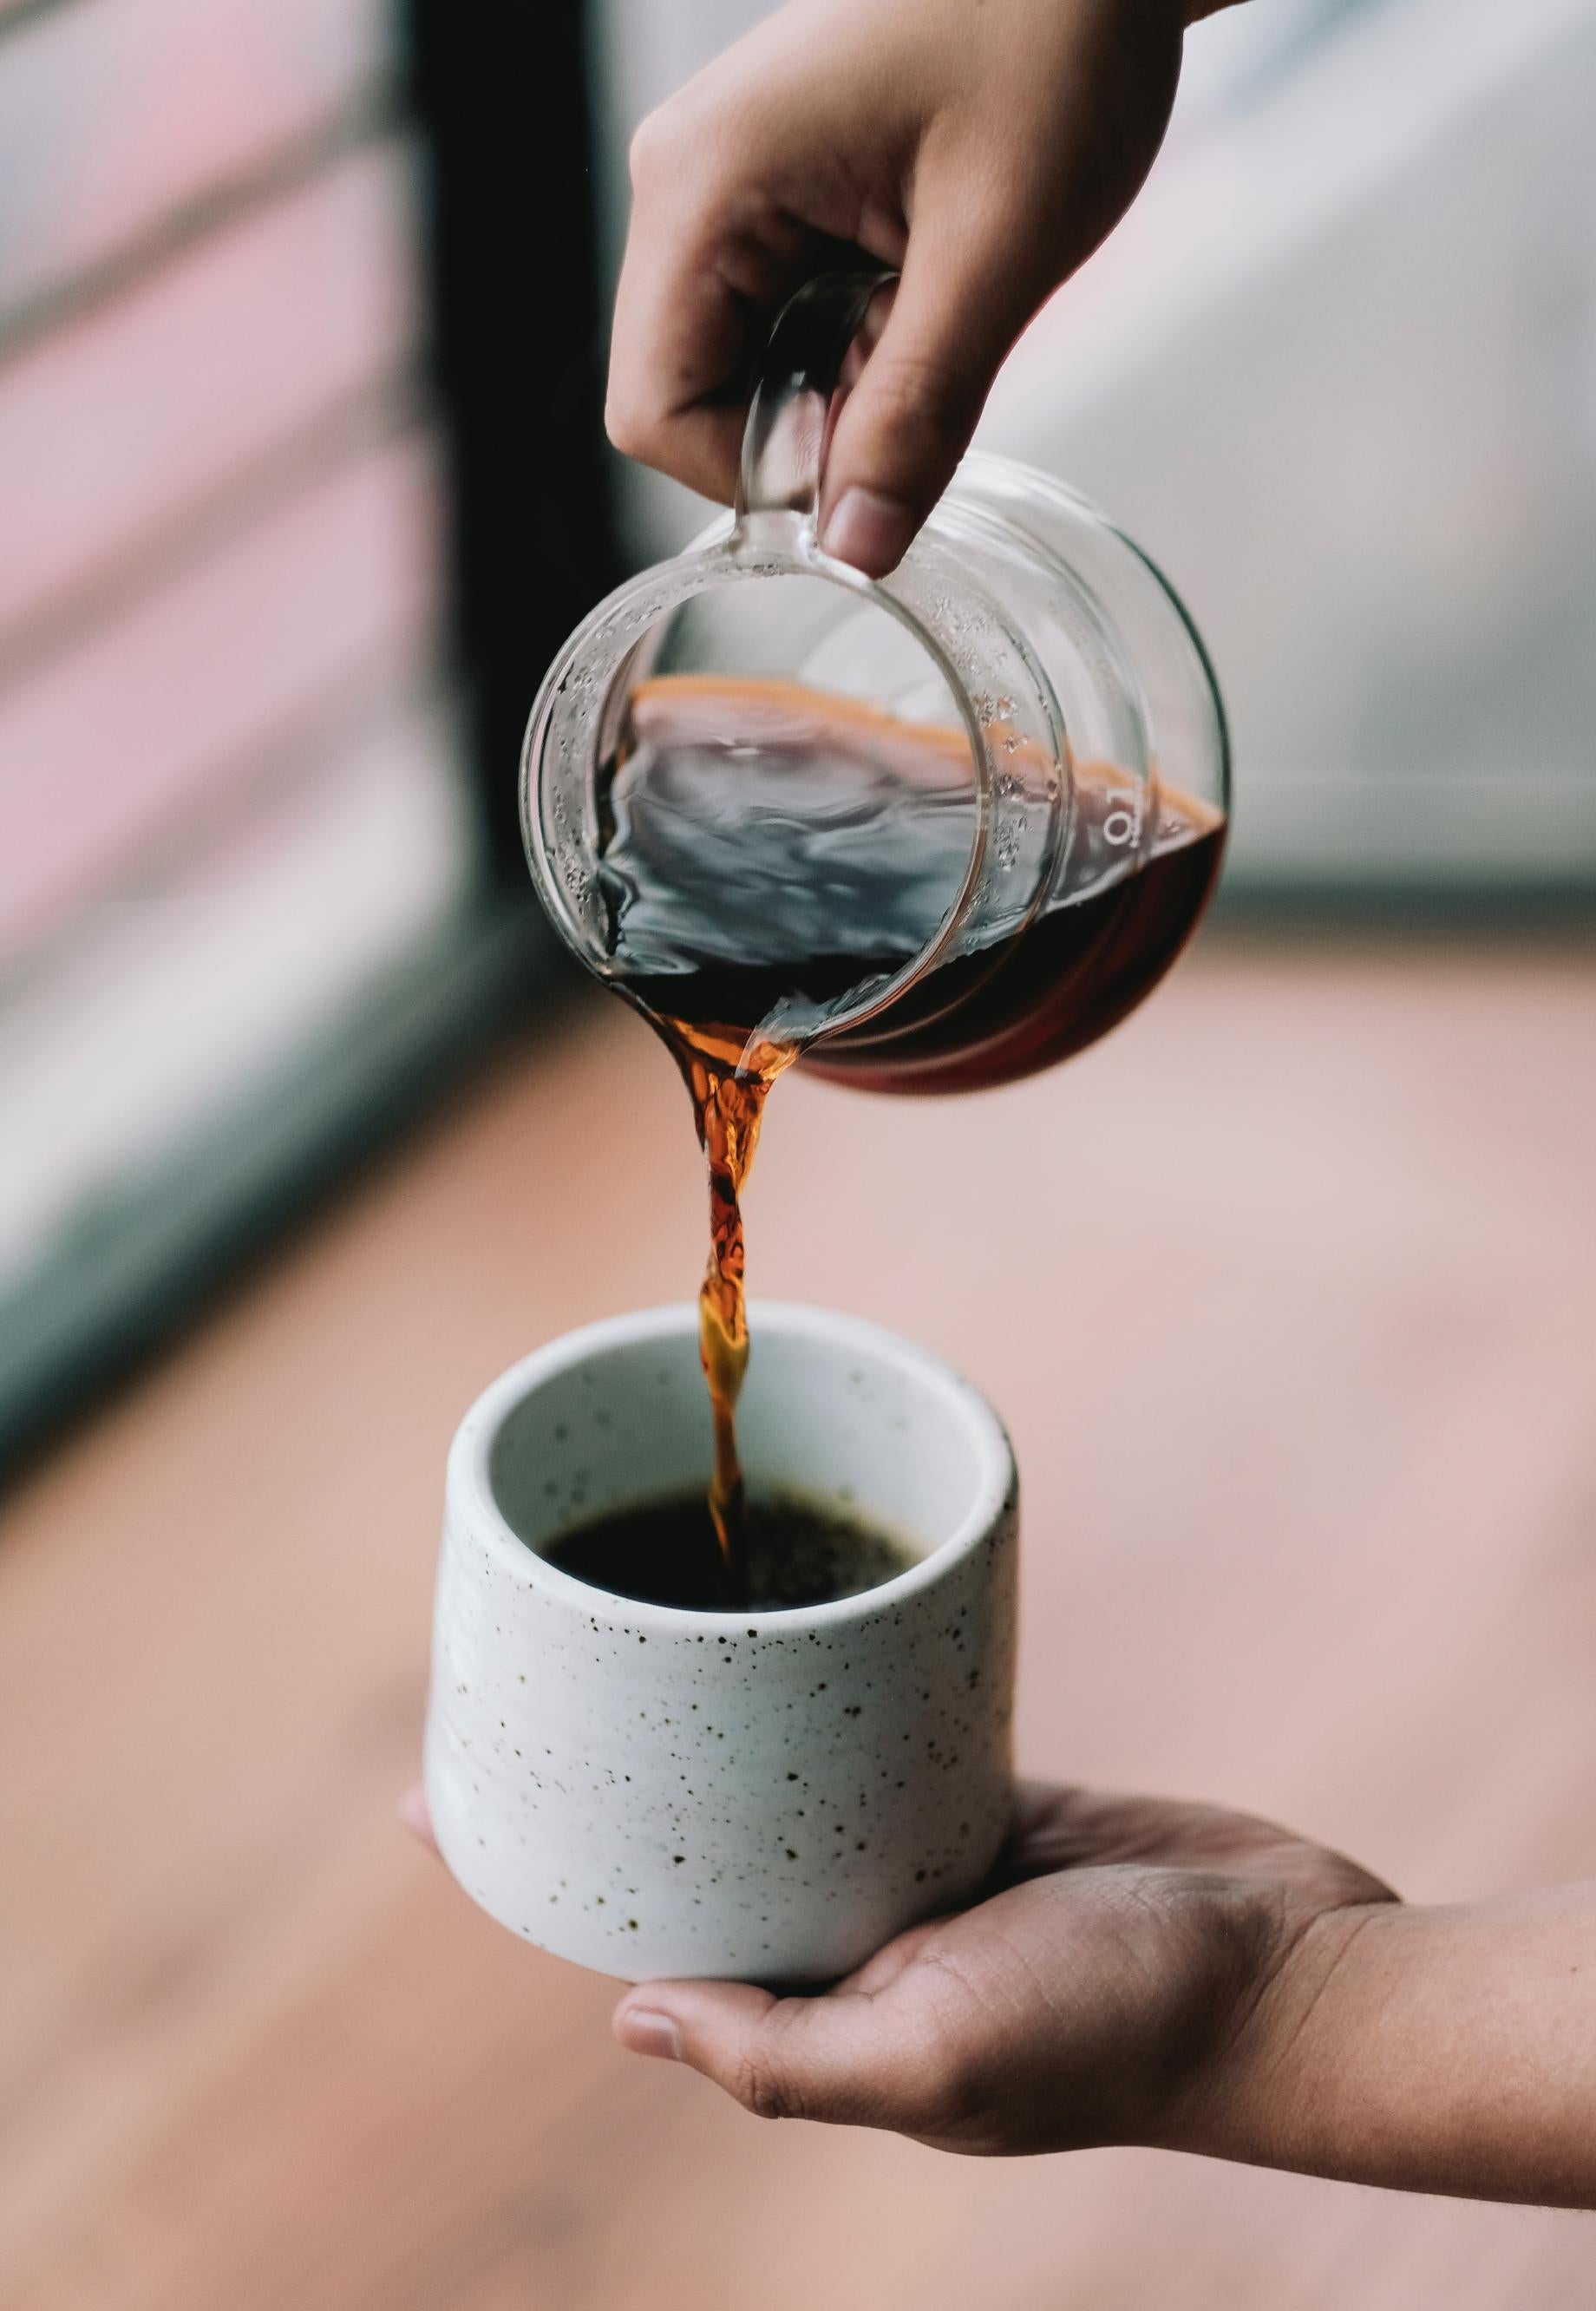 Ob in der Hario oder Chemex, Filterkaffee, von Hand zubereitet für das ultimative Kaffeeerlebnis - probiere die perfekt ausbalancierten Aromen und die samtige Textur in unserer Kaffeerösterei